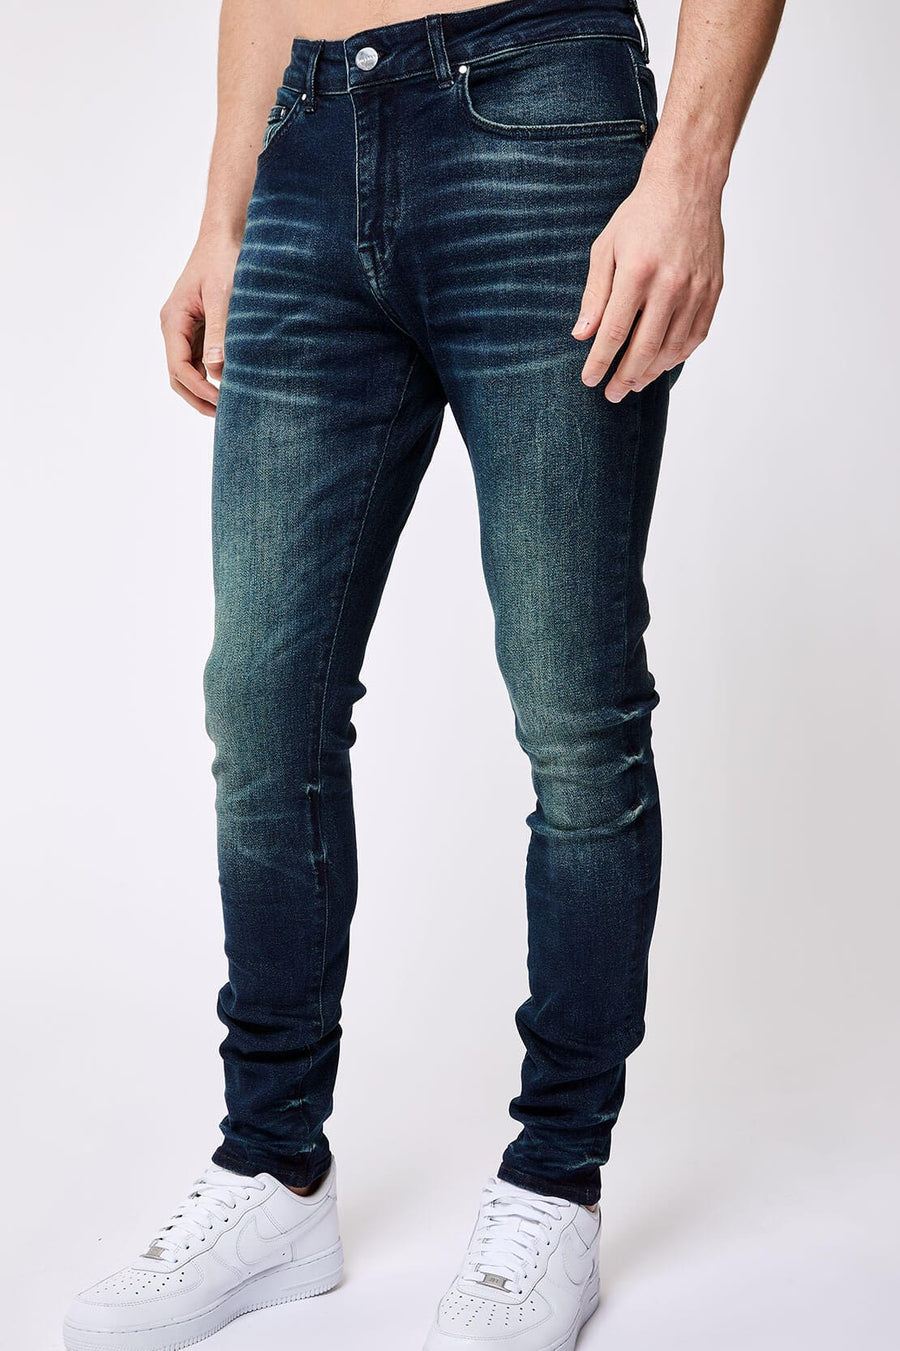 Legend London Jeans SKINNY FIT JEANS - DARK BLUE OVERDYE